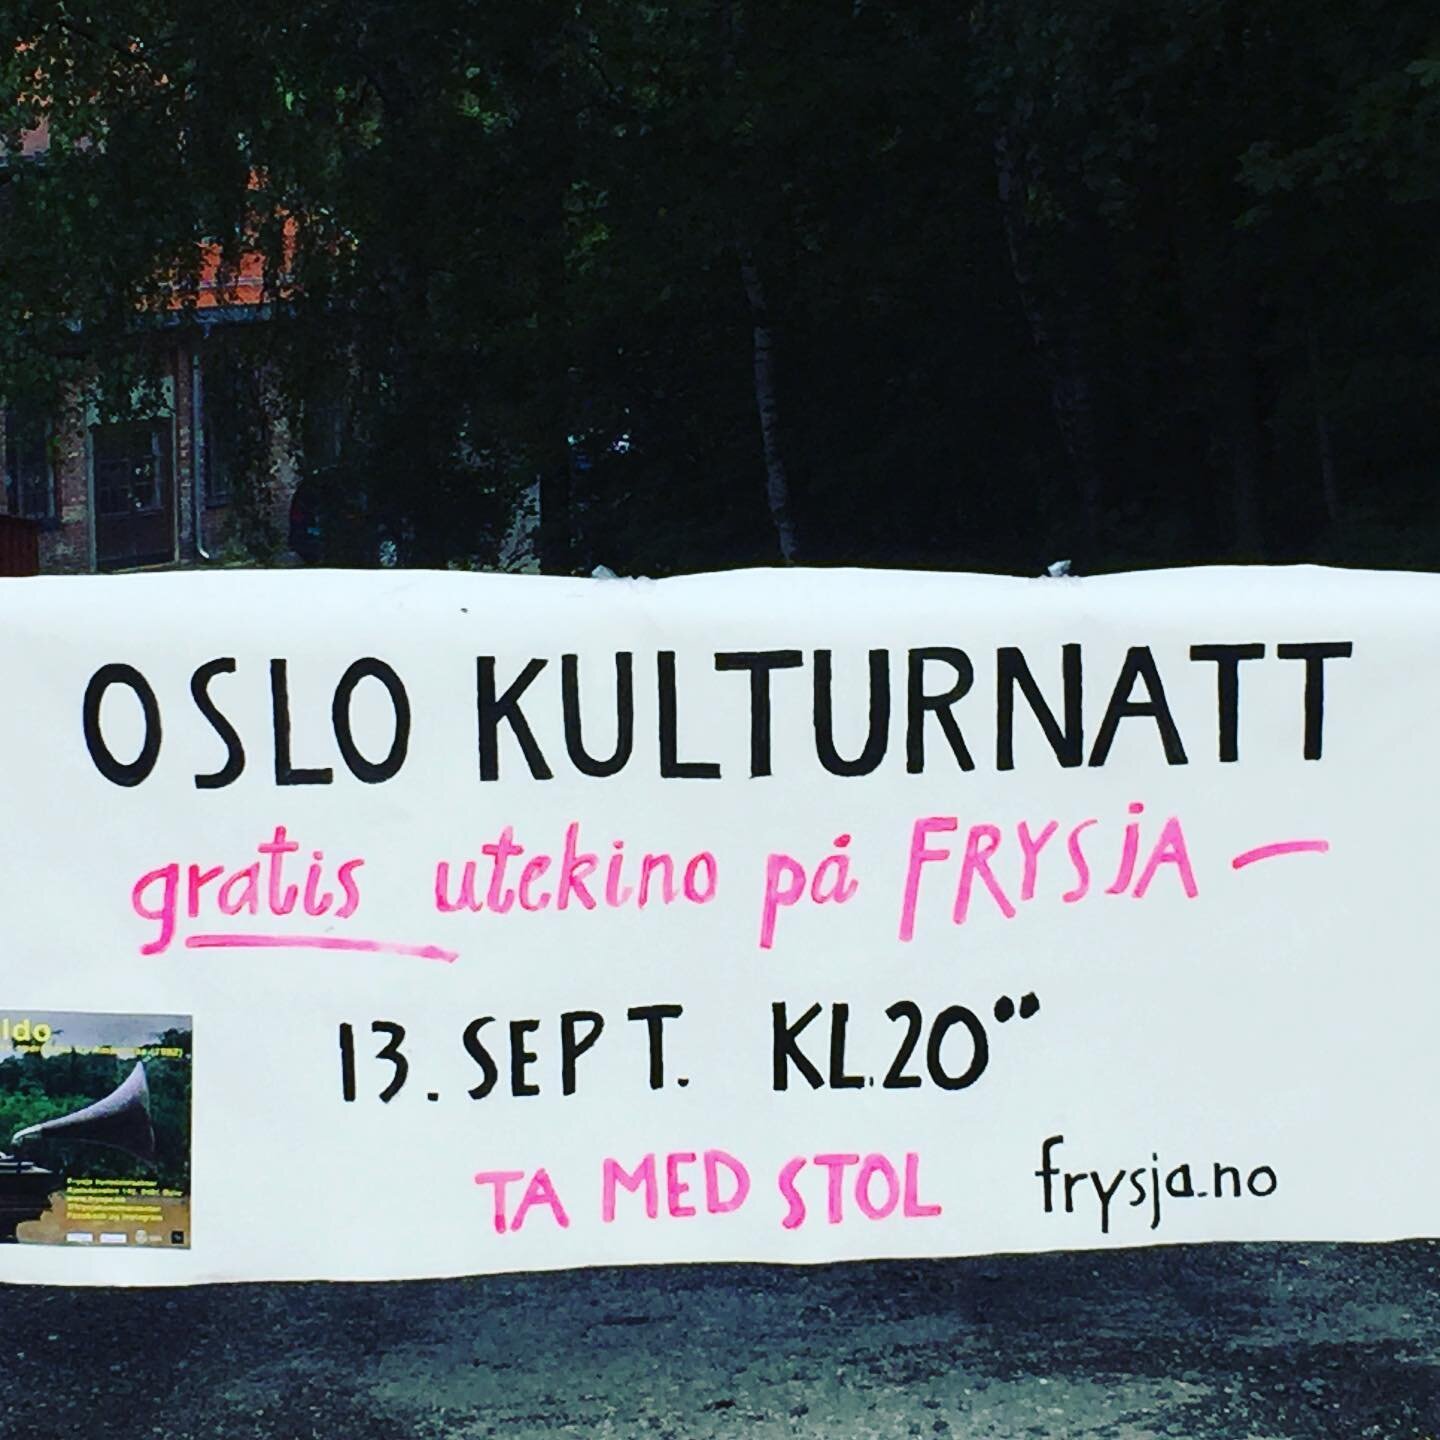 Det blir magisk med opera og Fitzcarraldo av Werner Herzog fredag 13.sept @frysjakunstnersenter #oslokulturnatt #kulturetaten